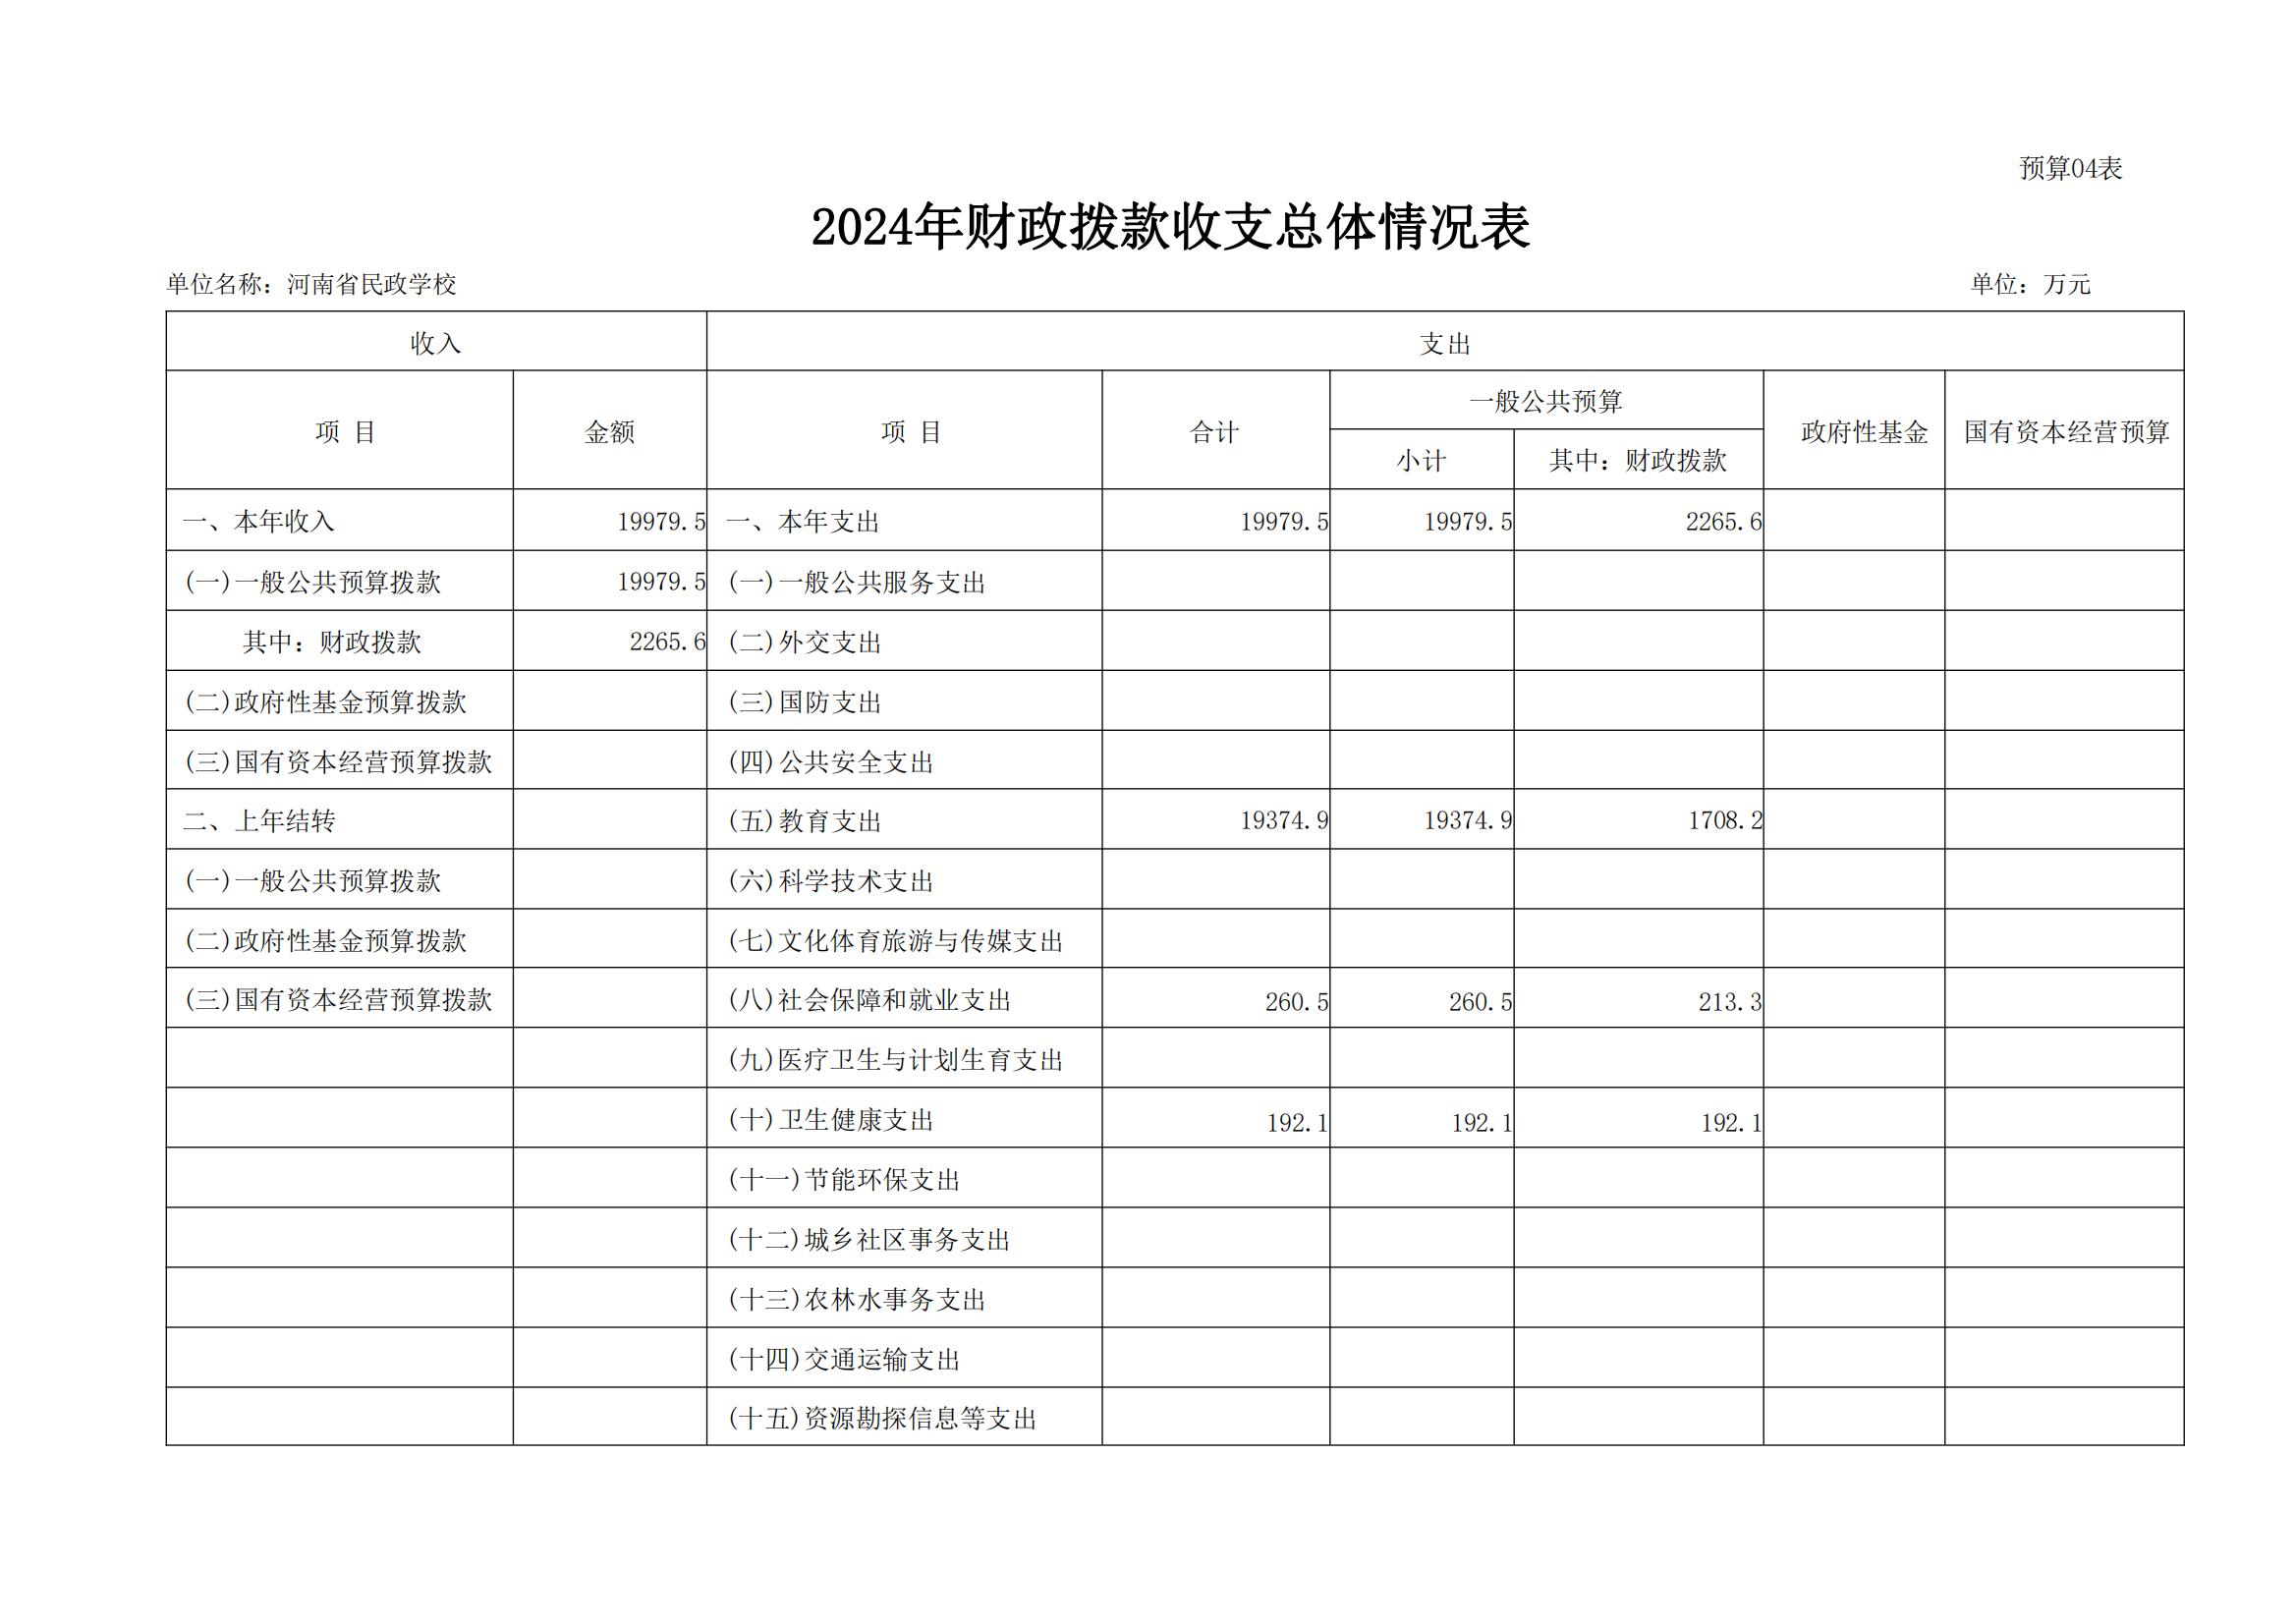 河南省民政学校2024年部门预算公开(1)_11.jpg